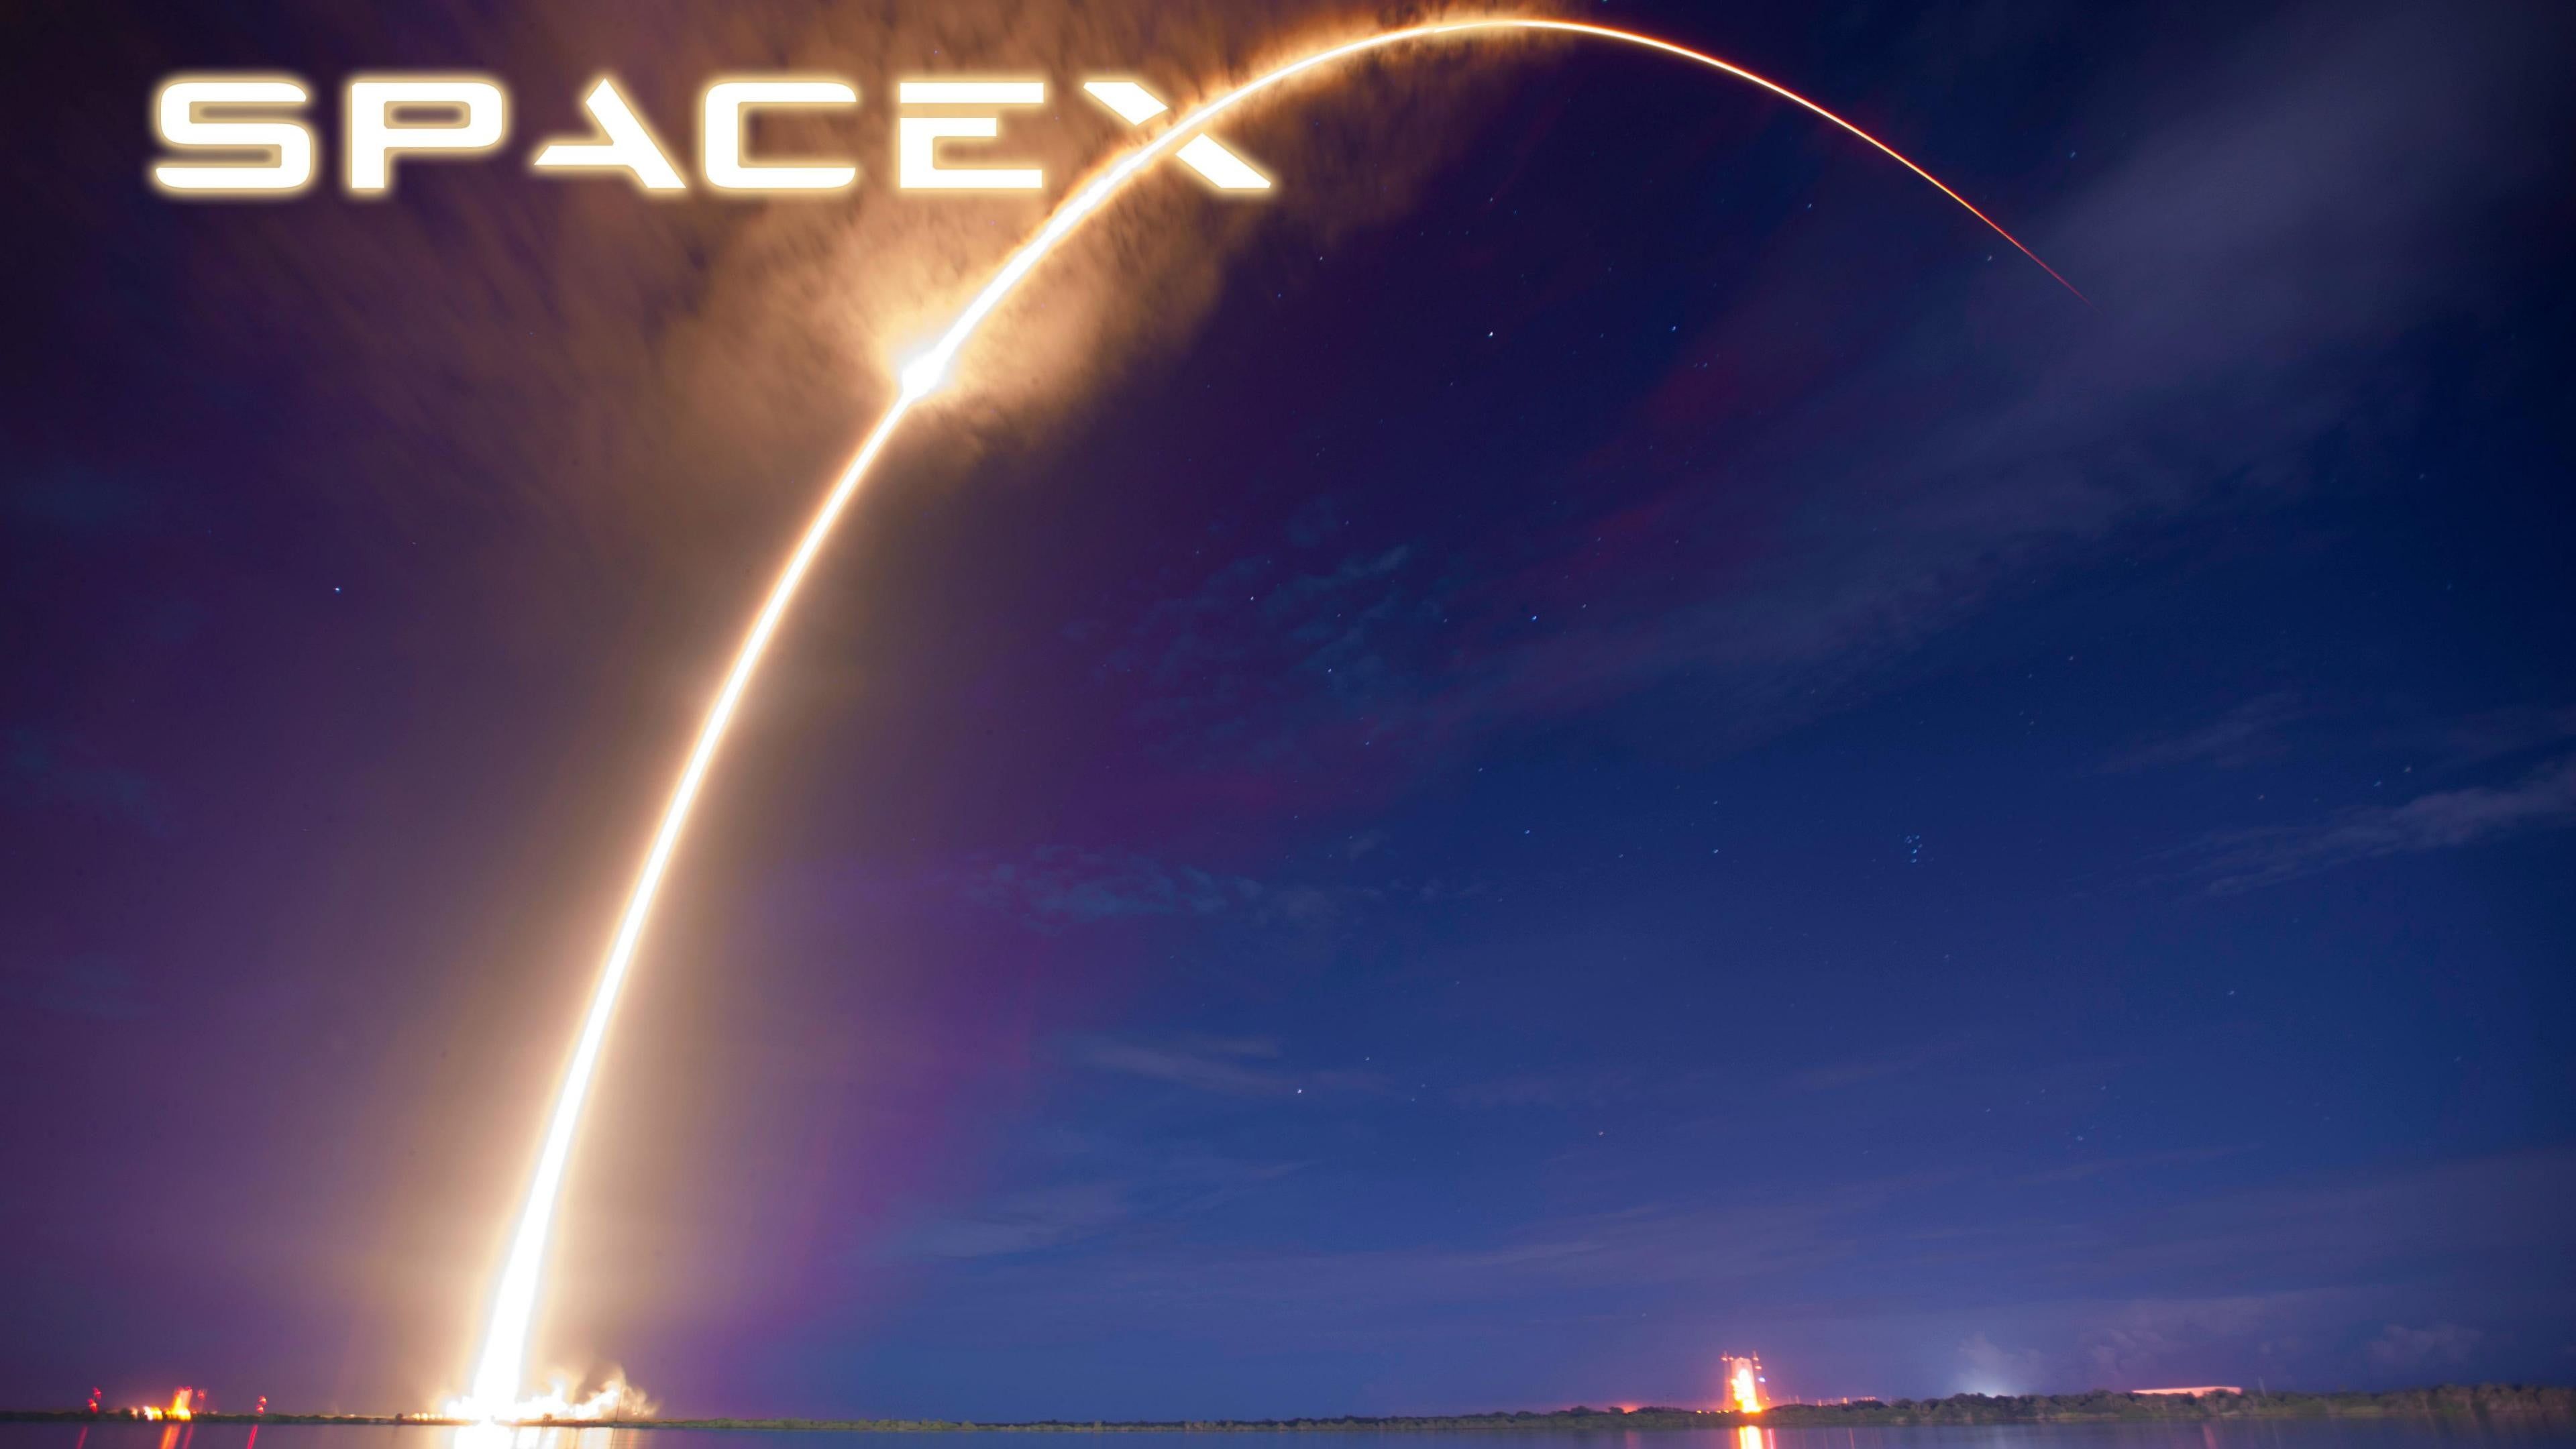 Vòng Tròn Không Gian SpaceX (SpaceX Space Circle Wallpapers): Hãy chiêm ngưỡng bức tranh tuyệt đẹp về Vòng Tròn Không Gian của SpaceX! Bức tranh này thực sự khiến bạn say đắm, khi bạn có thể thấy được những chi tiết tinh tế và sự kết hợp vô cùng ấn tượng giữa không gian và khoa học công nghệ. Đừng ngại tải về và làm hình nền cho màn hình điện thoại hay máy tính của mình ngay hôm nay!